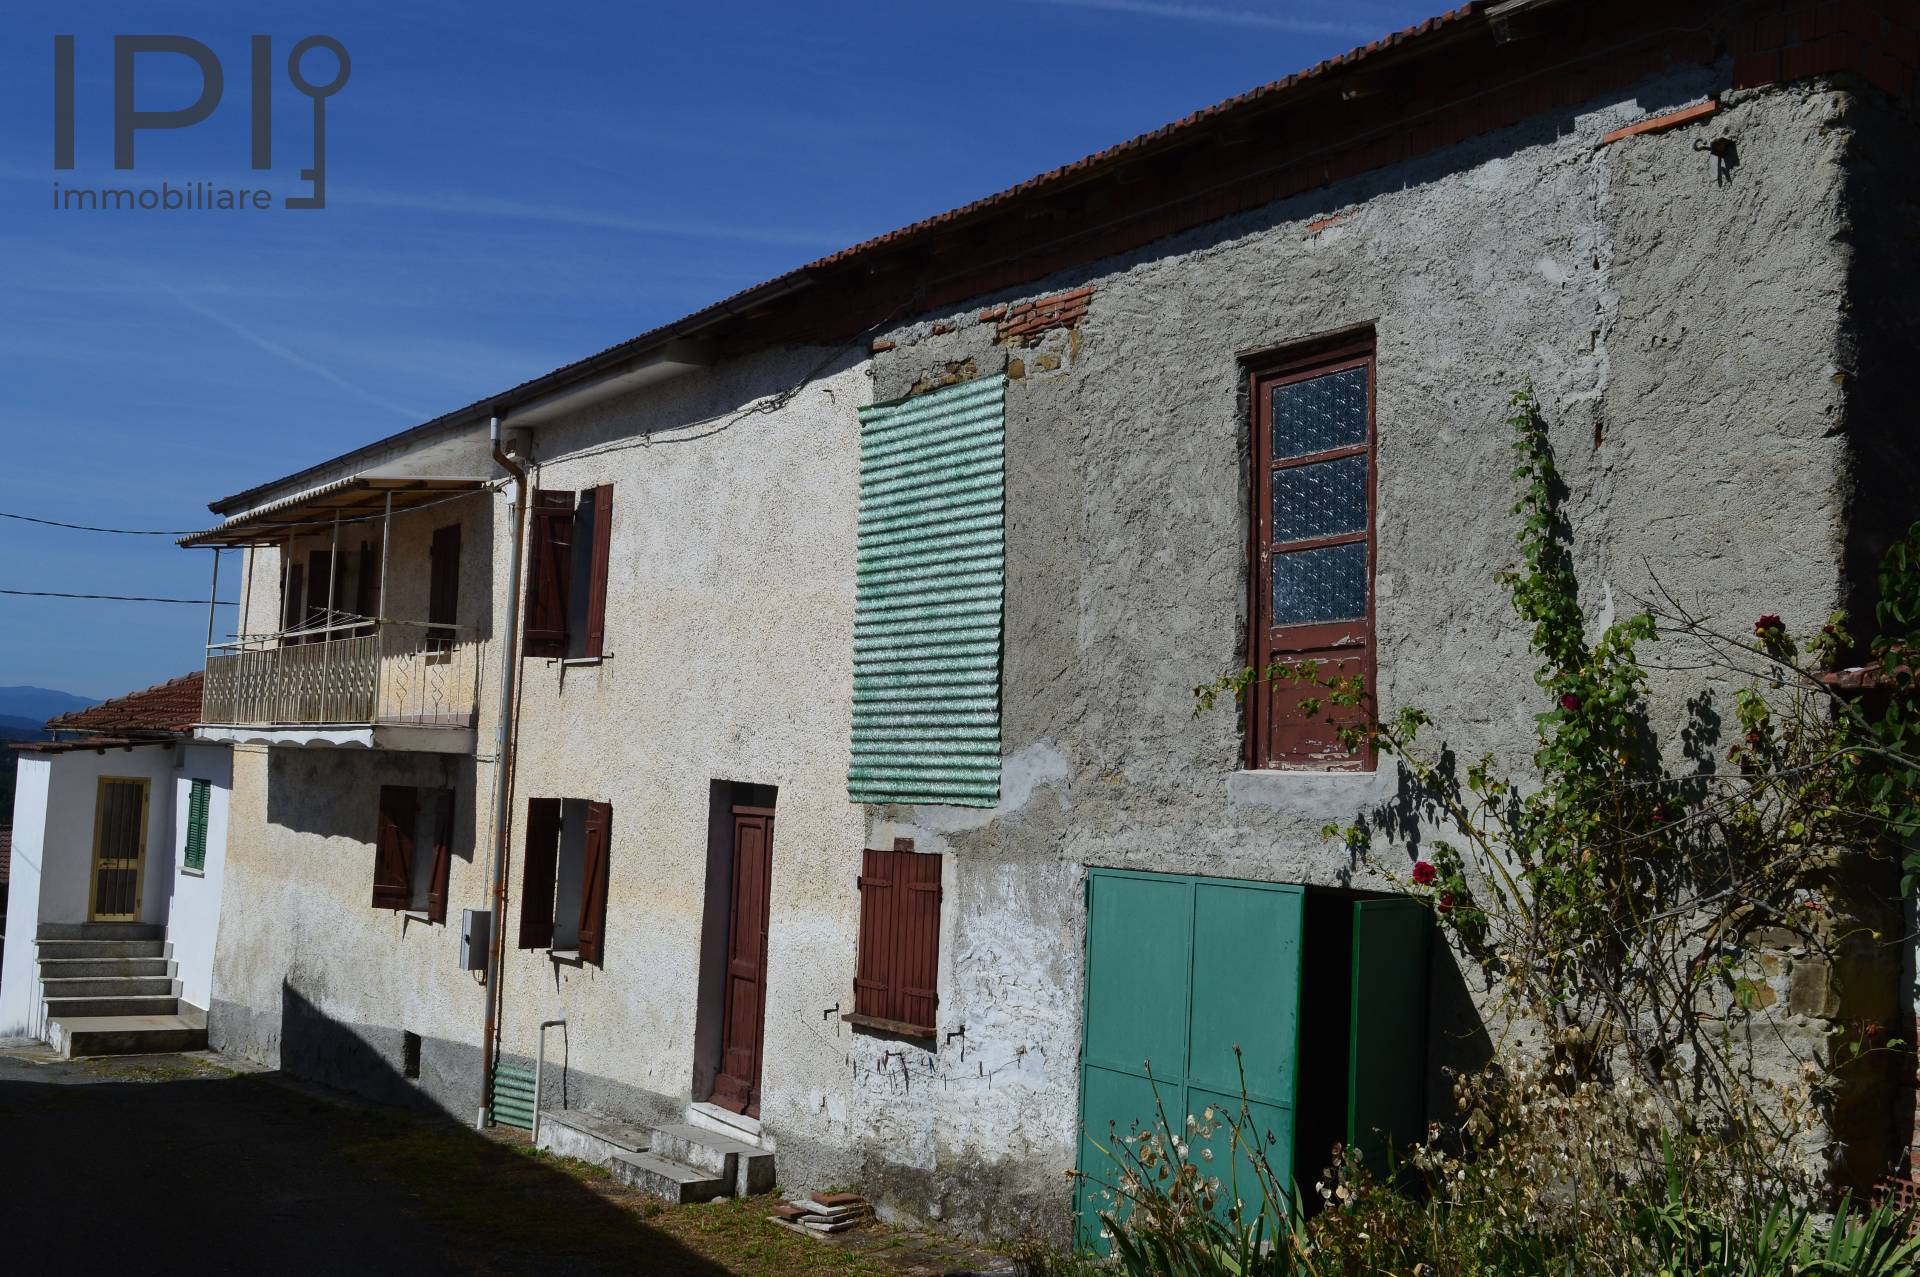 Rustico / Casale in vendita a Spigno Monferrato, 7 locali, prezzo € 29.000 | PortaleAgenzieImmobiliari.it